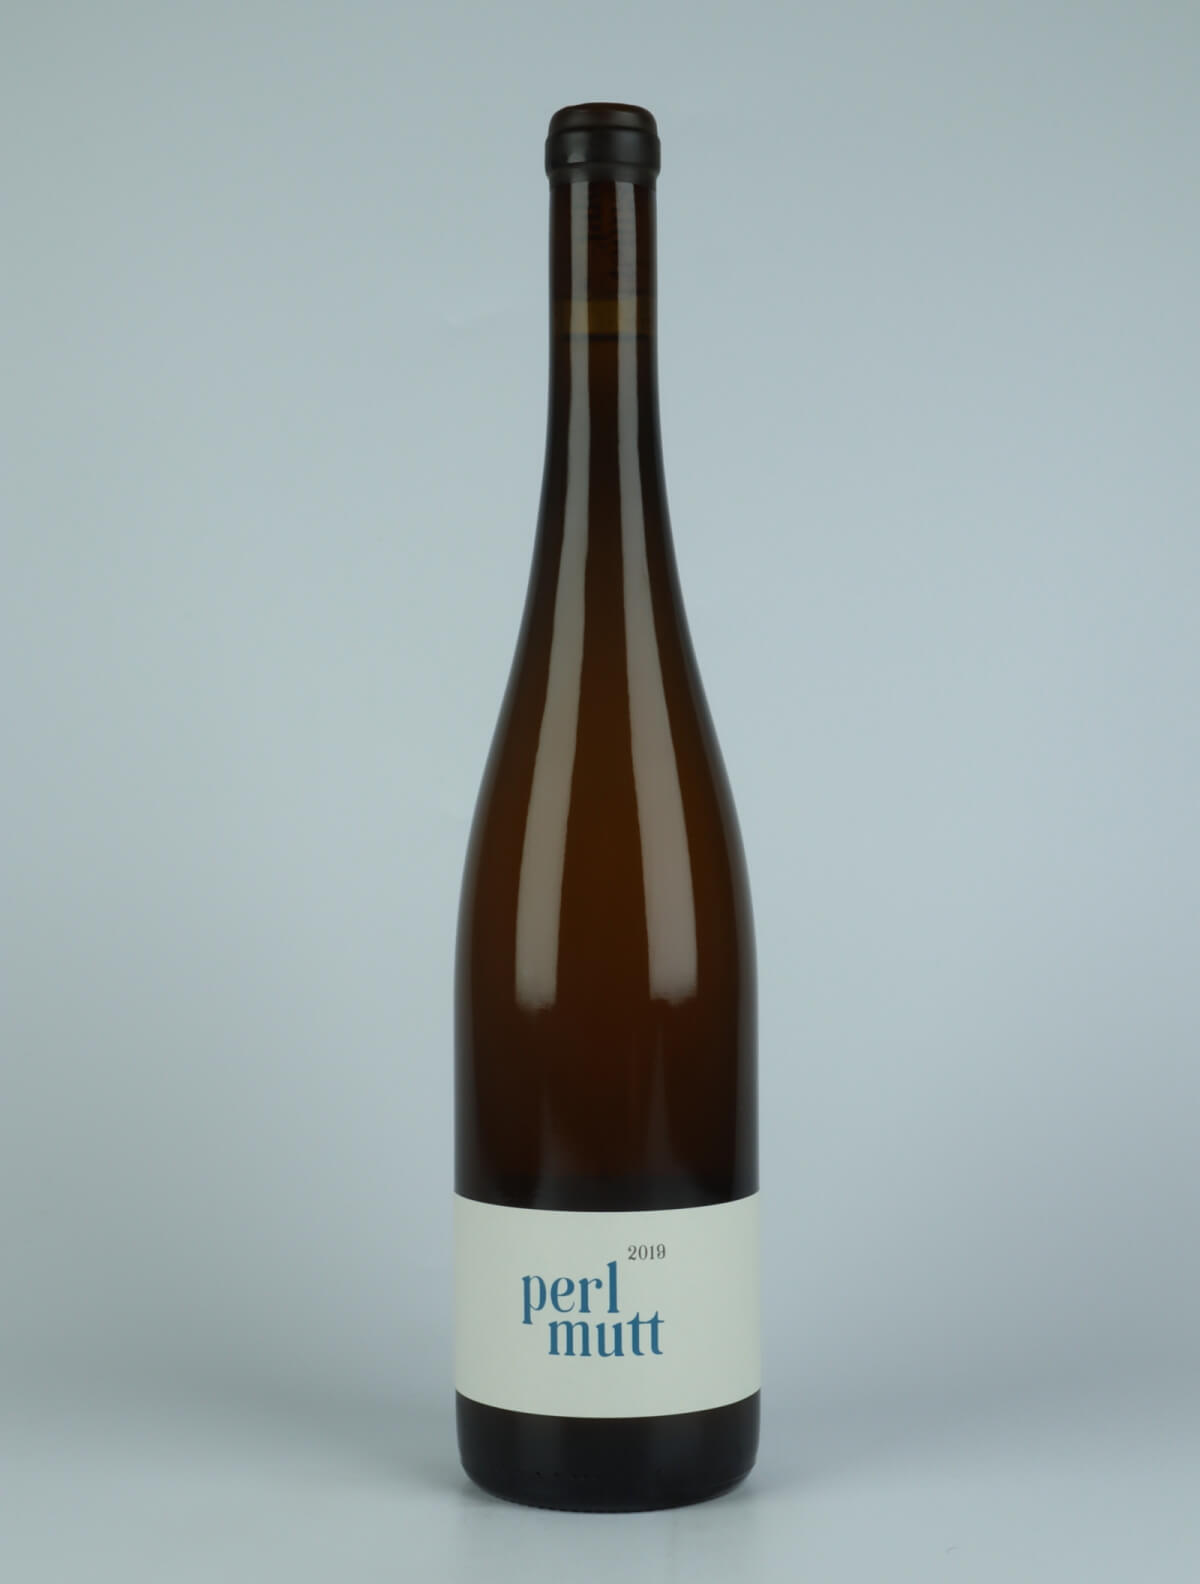 En flaske 2019 Perlmutt Hvidvin fra Jakob Tennstedt, Mosel i Tyskland